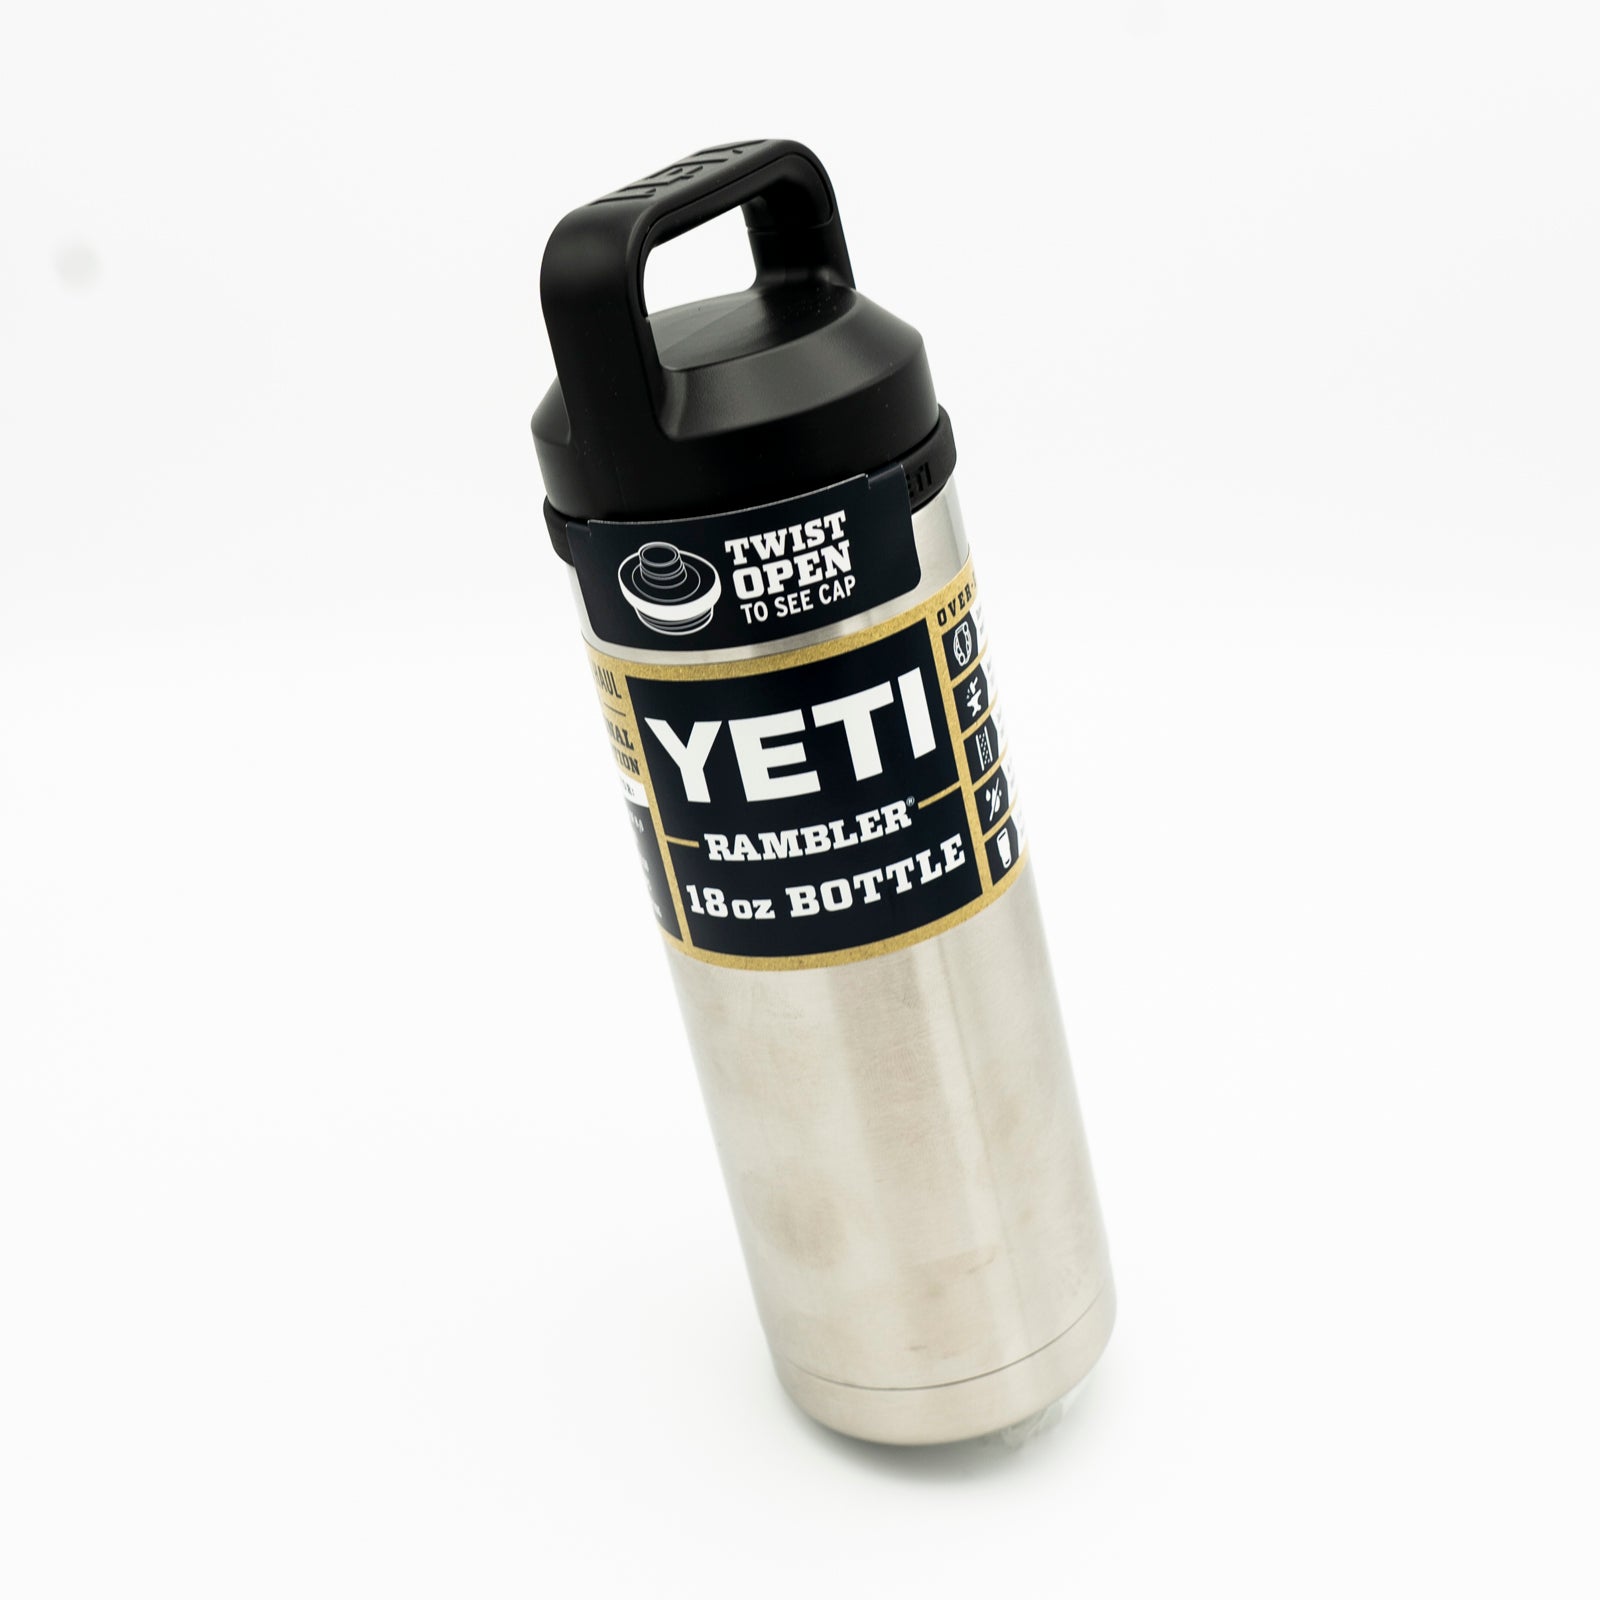 YETI - Rambler 18oz Bottle w/Chug Cap - 888830072905